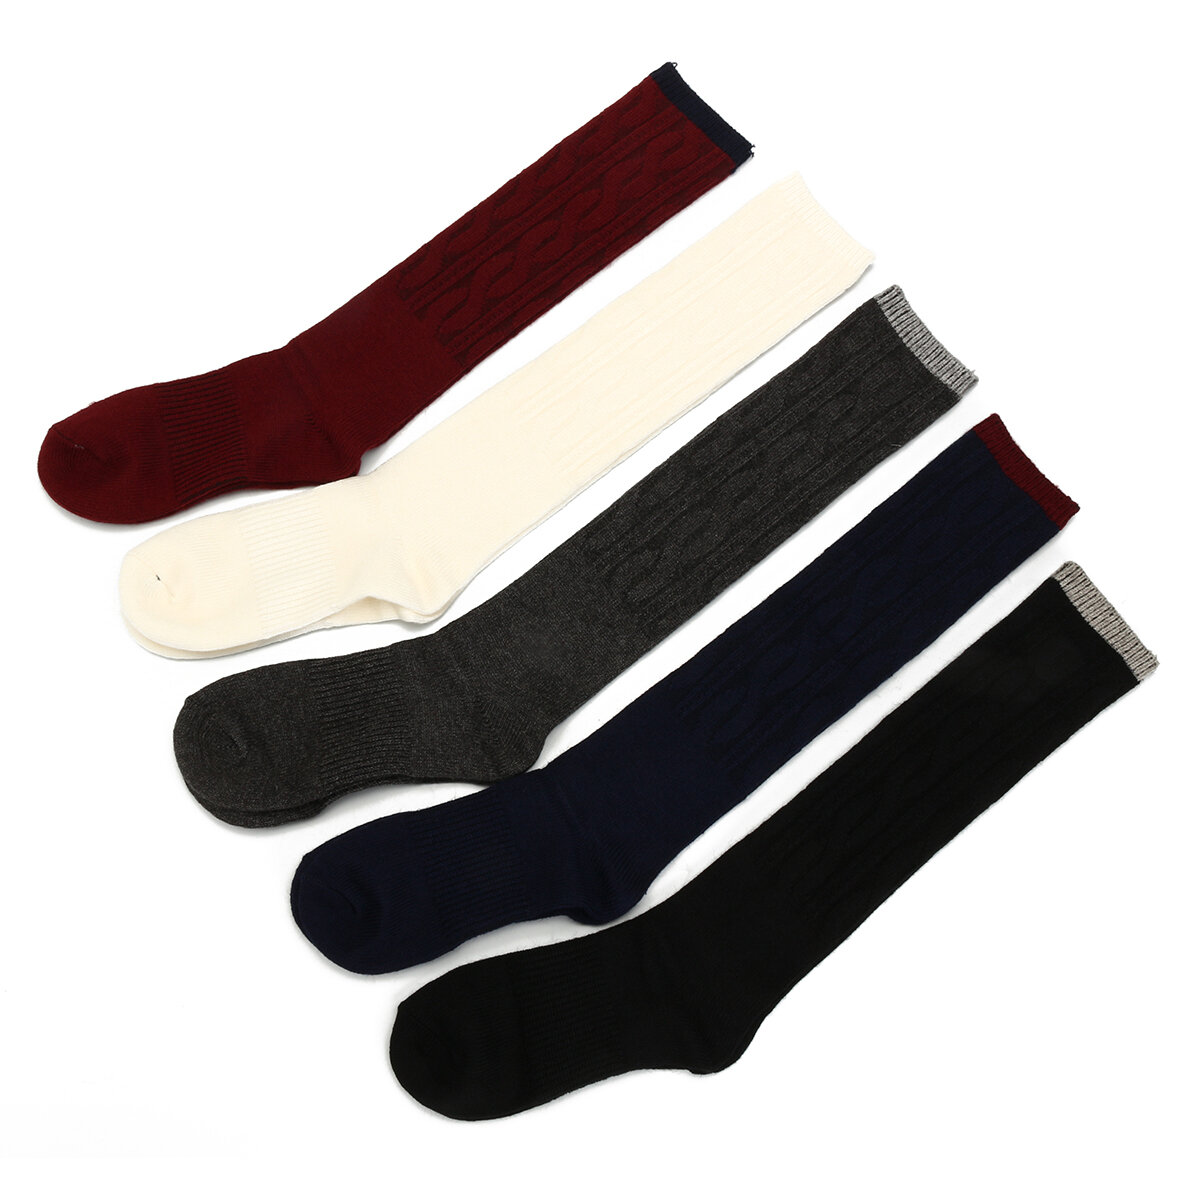 ames kniehoge sokken van 100% kasjmierwol, warm, dik, zacht en comfortabel voor winterlaarzen